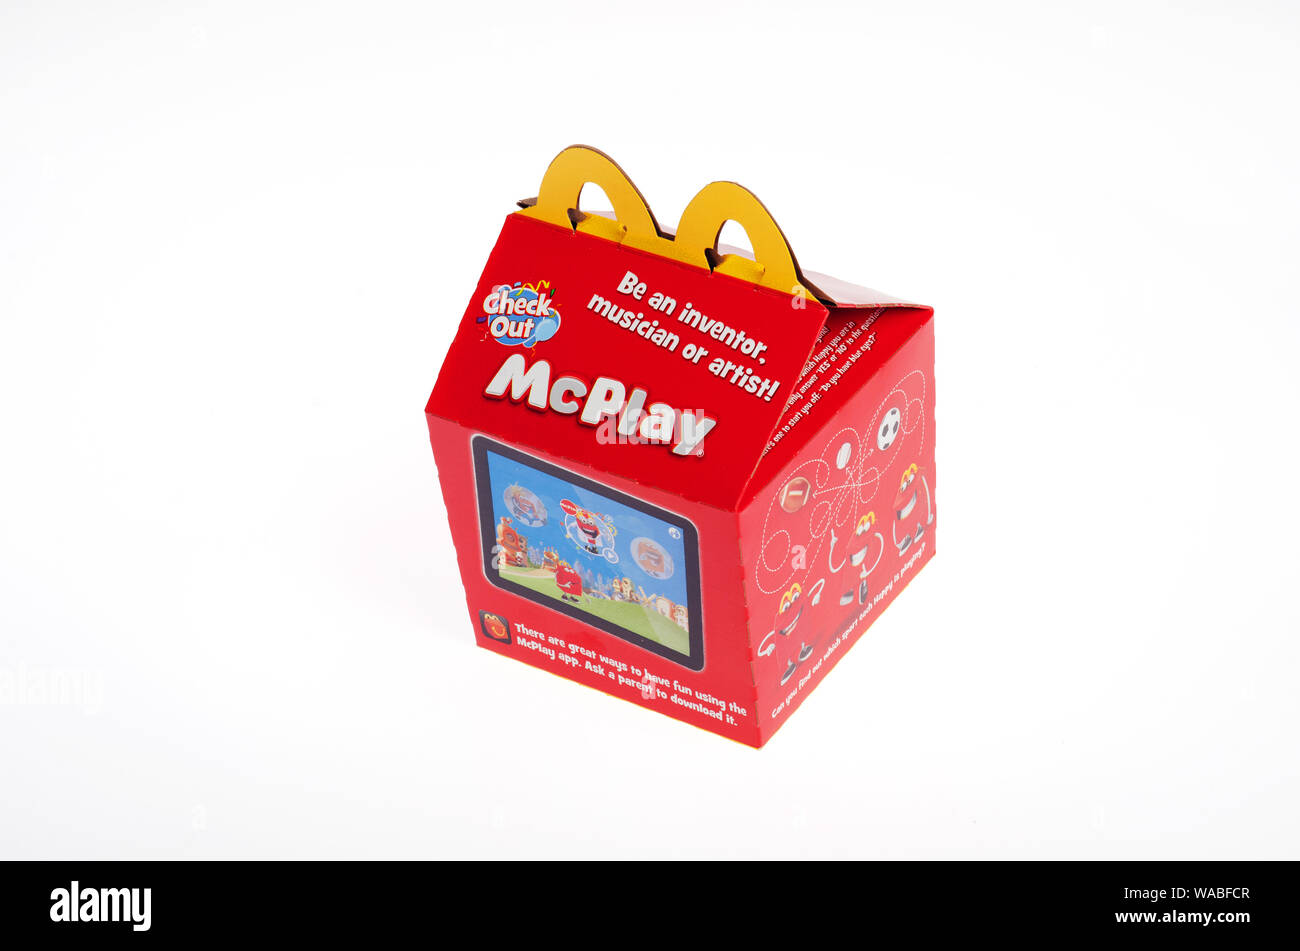 Mcdonalds Happy Meal Packaging Stockfotos und -bilder Kaufen - Alamy